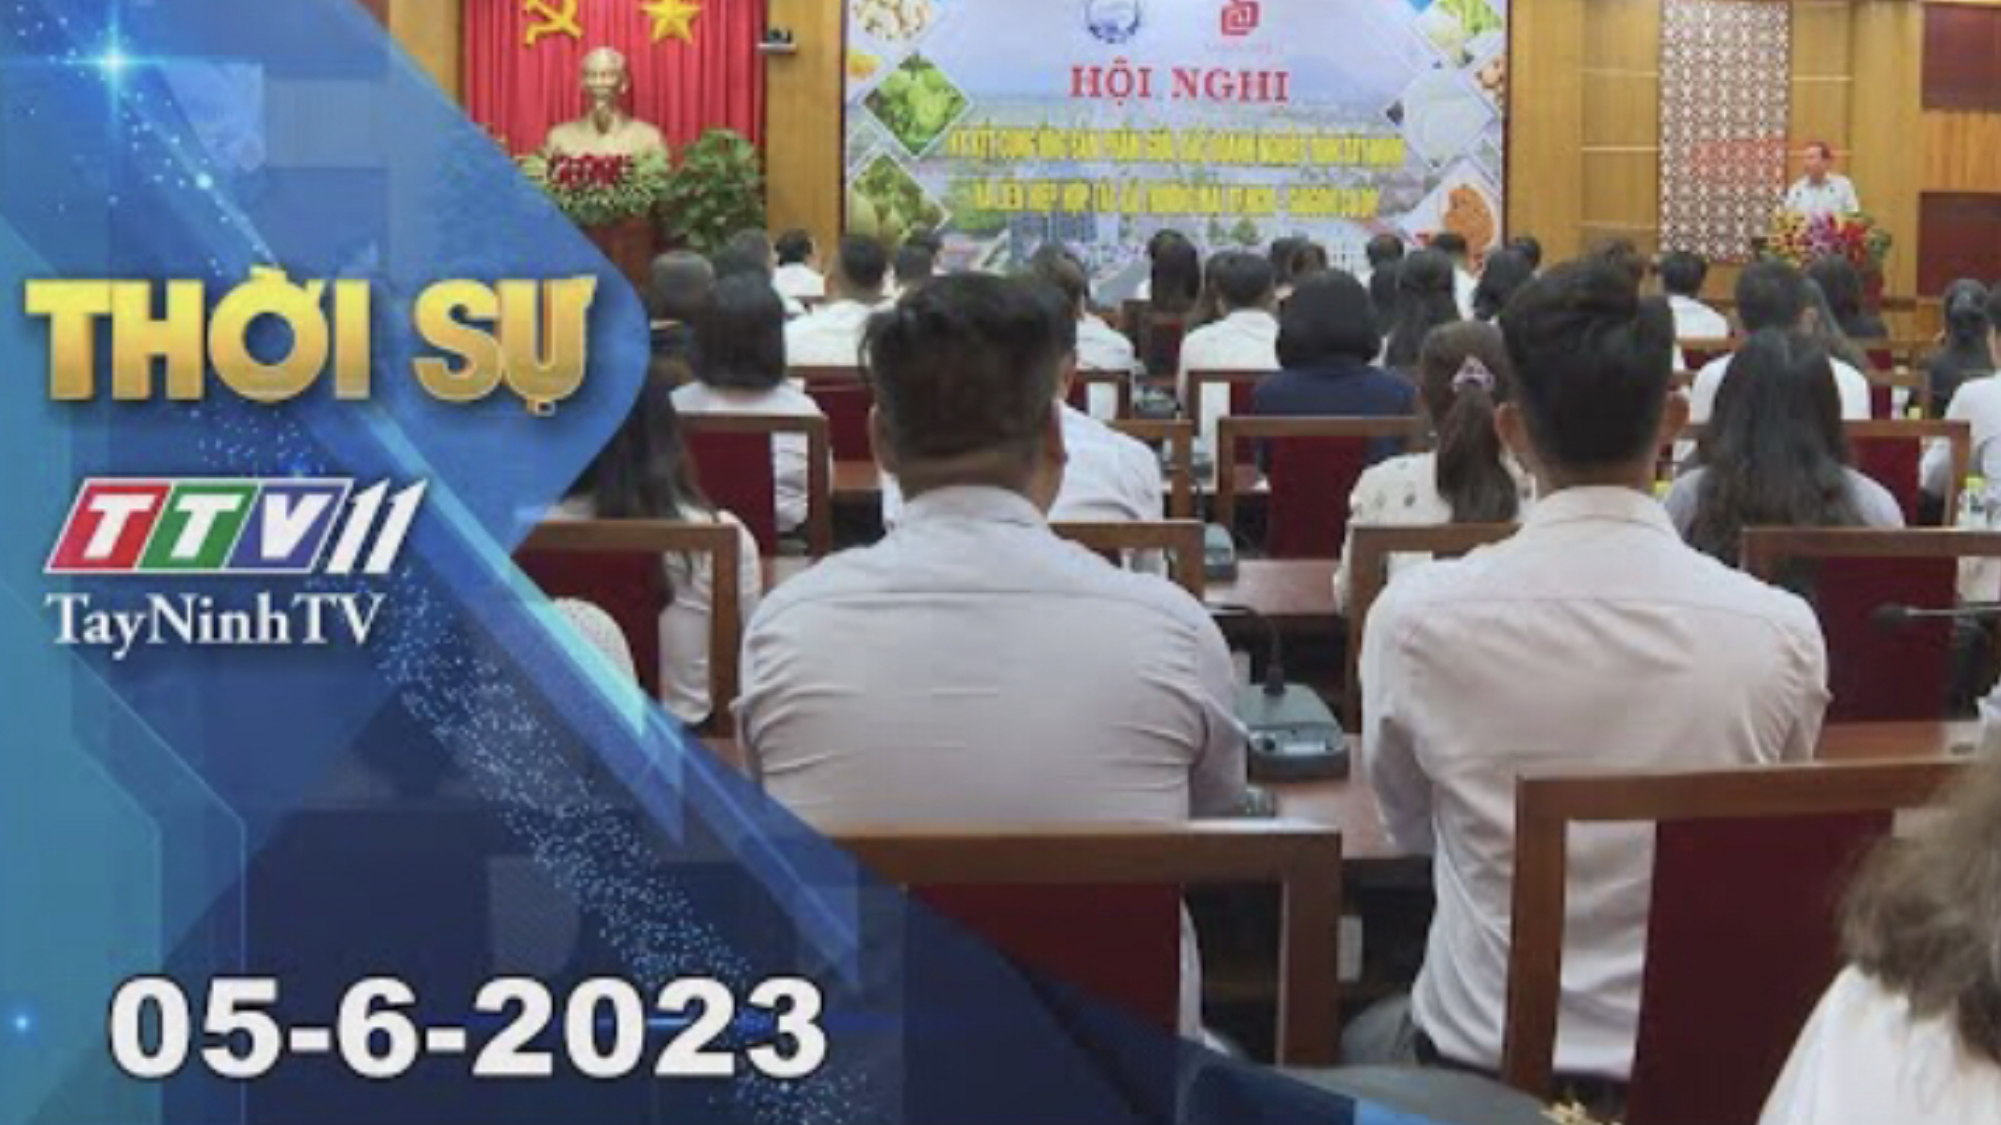 Thời sự Tây Ninh 05-6-2023 | Tin tức hôm nay | TayNinhTV